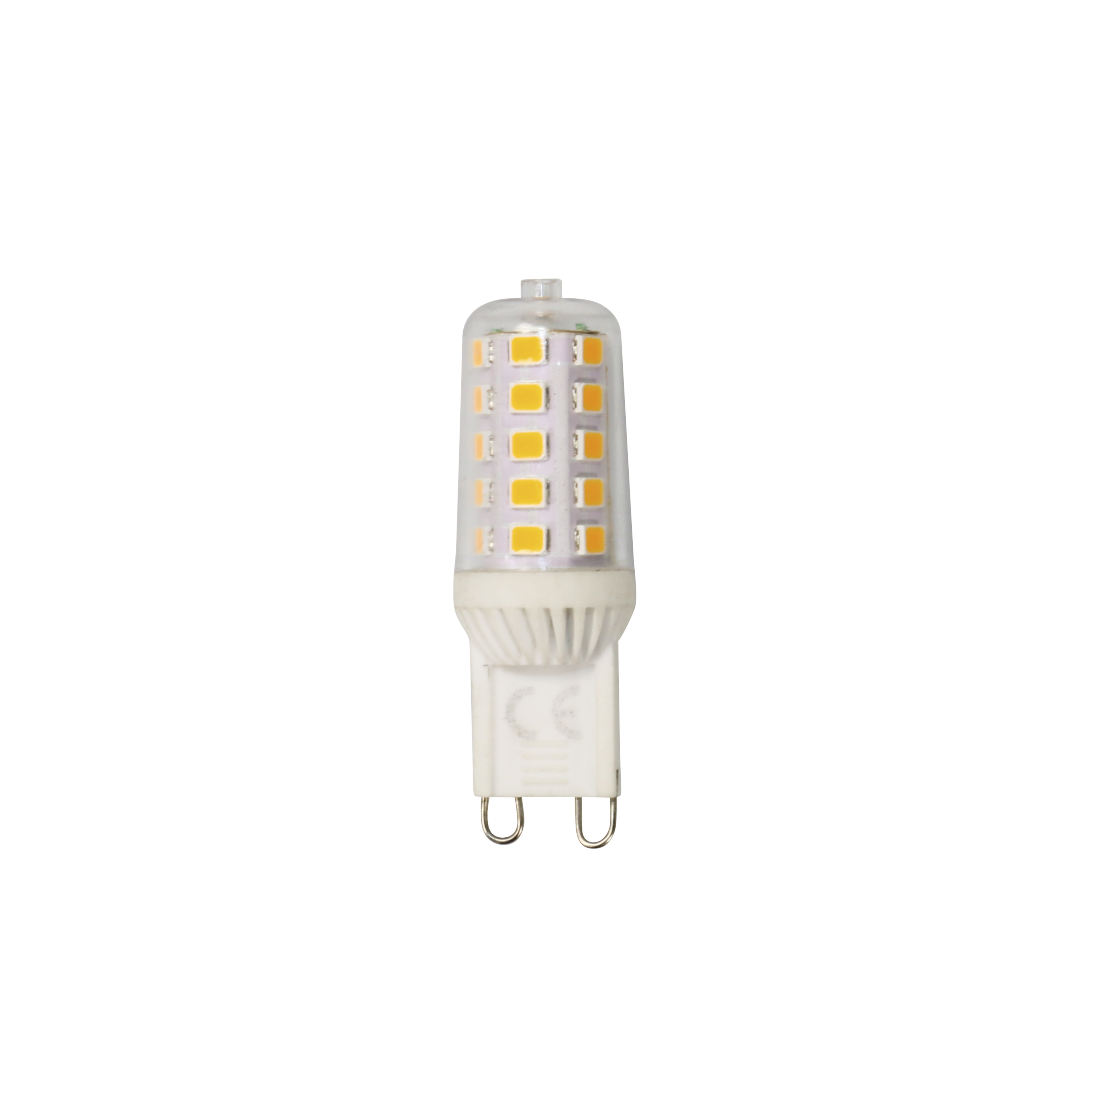 abx Druckfähige Abbildung - Xavax, LED-Lampe, G9, 300lm, ersetzt 28W, Stecksockellampe, dimmbar, Warmweiß